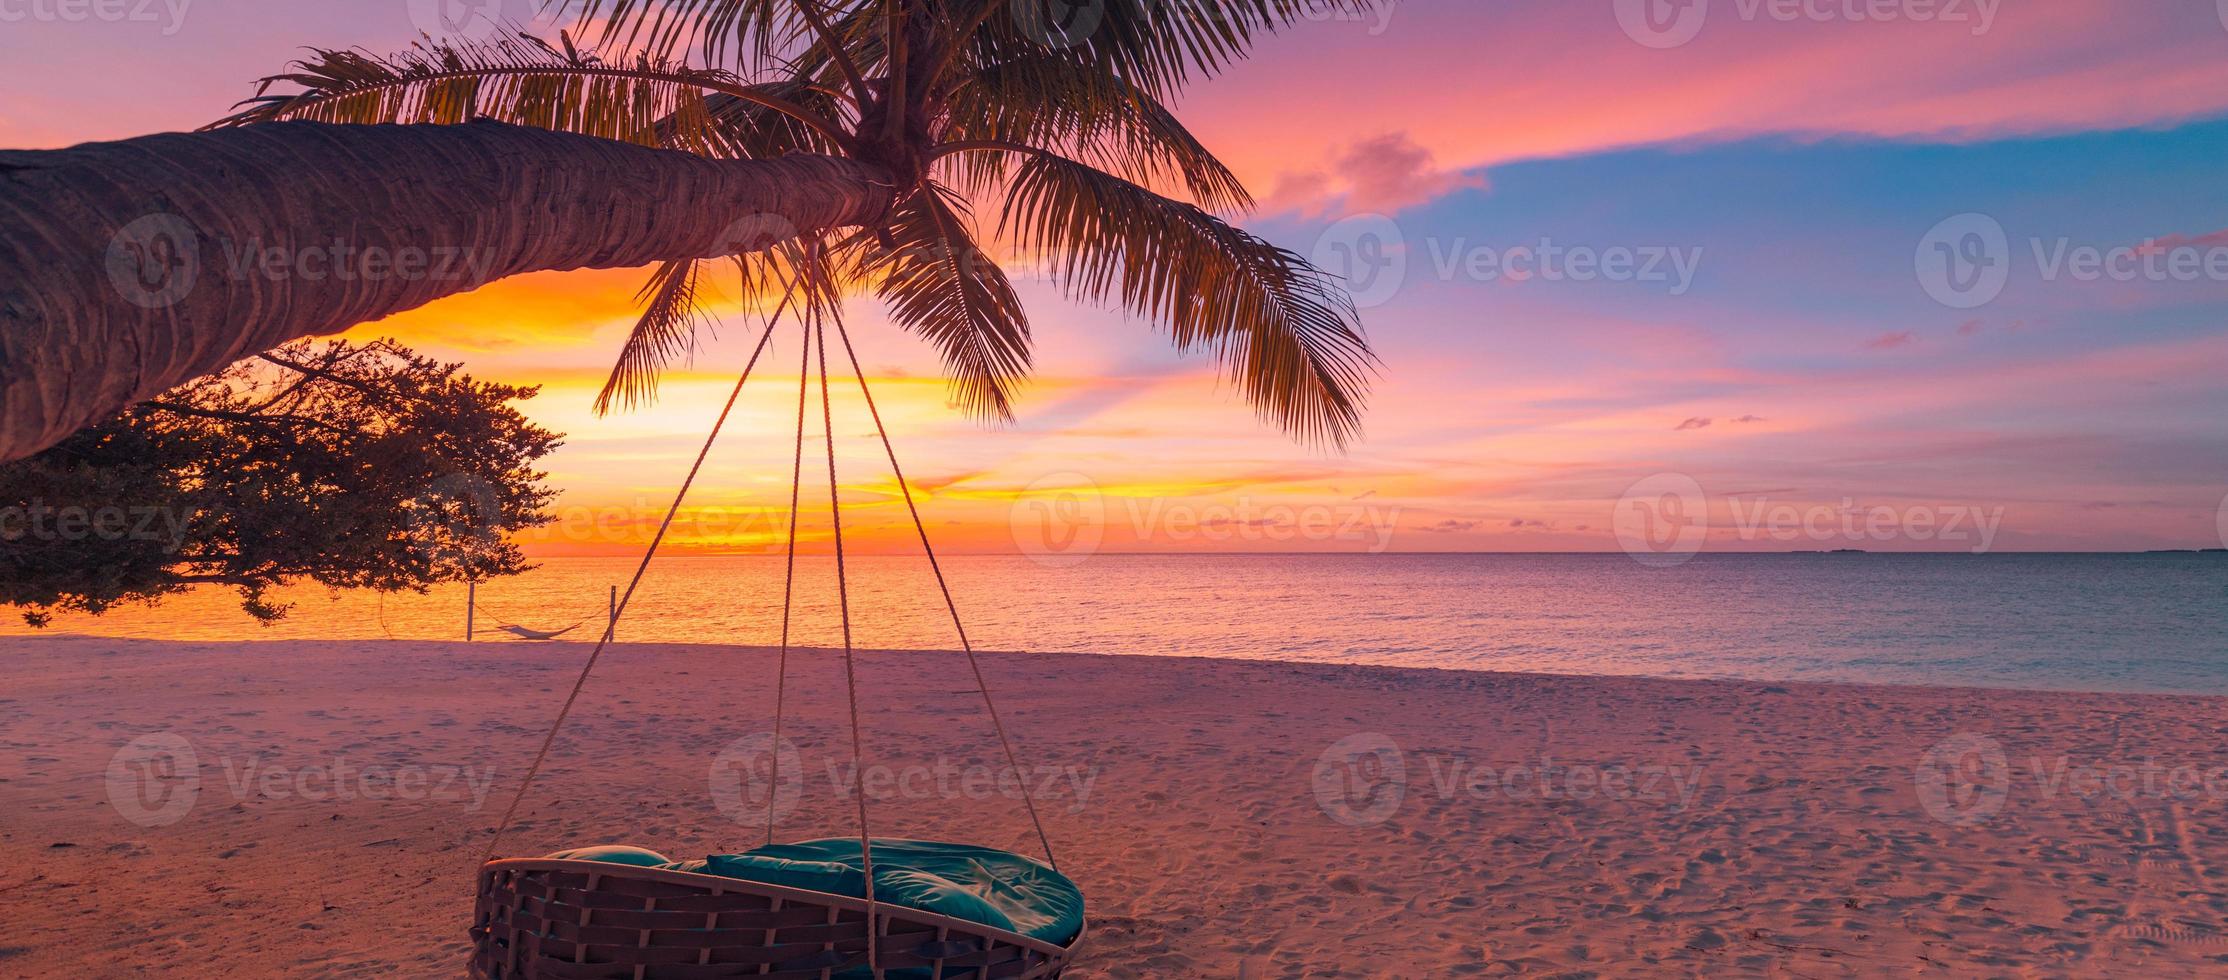 praia do sol tropical como panorama de paisagem de verão com balanço de praia ou rede. céu colorido, folhas de palmeira de areia e bandeira de praia de mar calmo. cena de praia romântica de casal foto